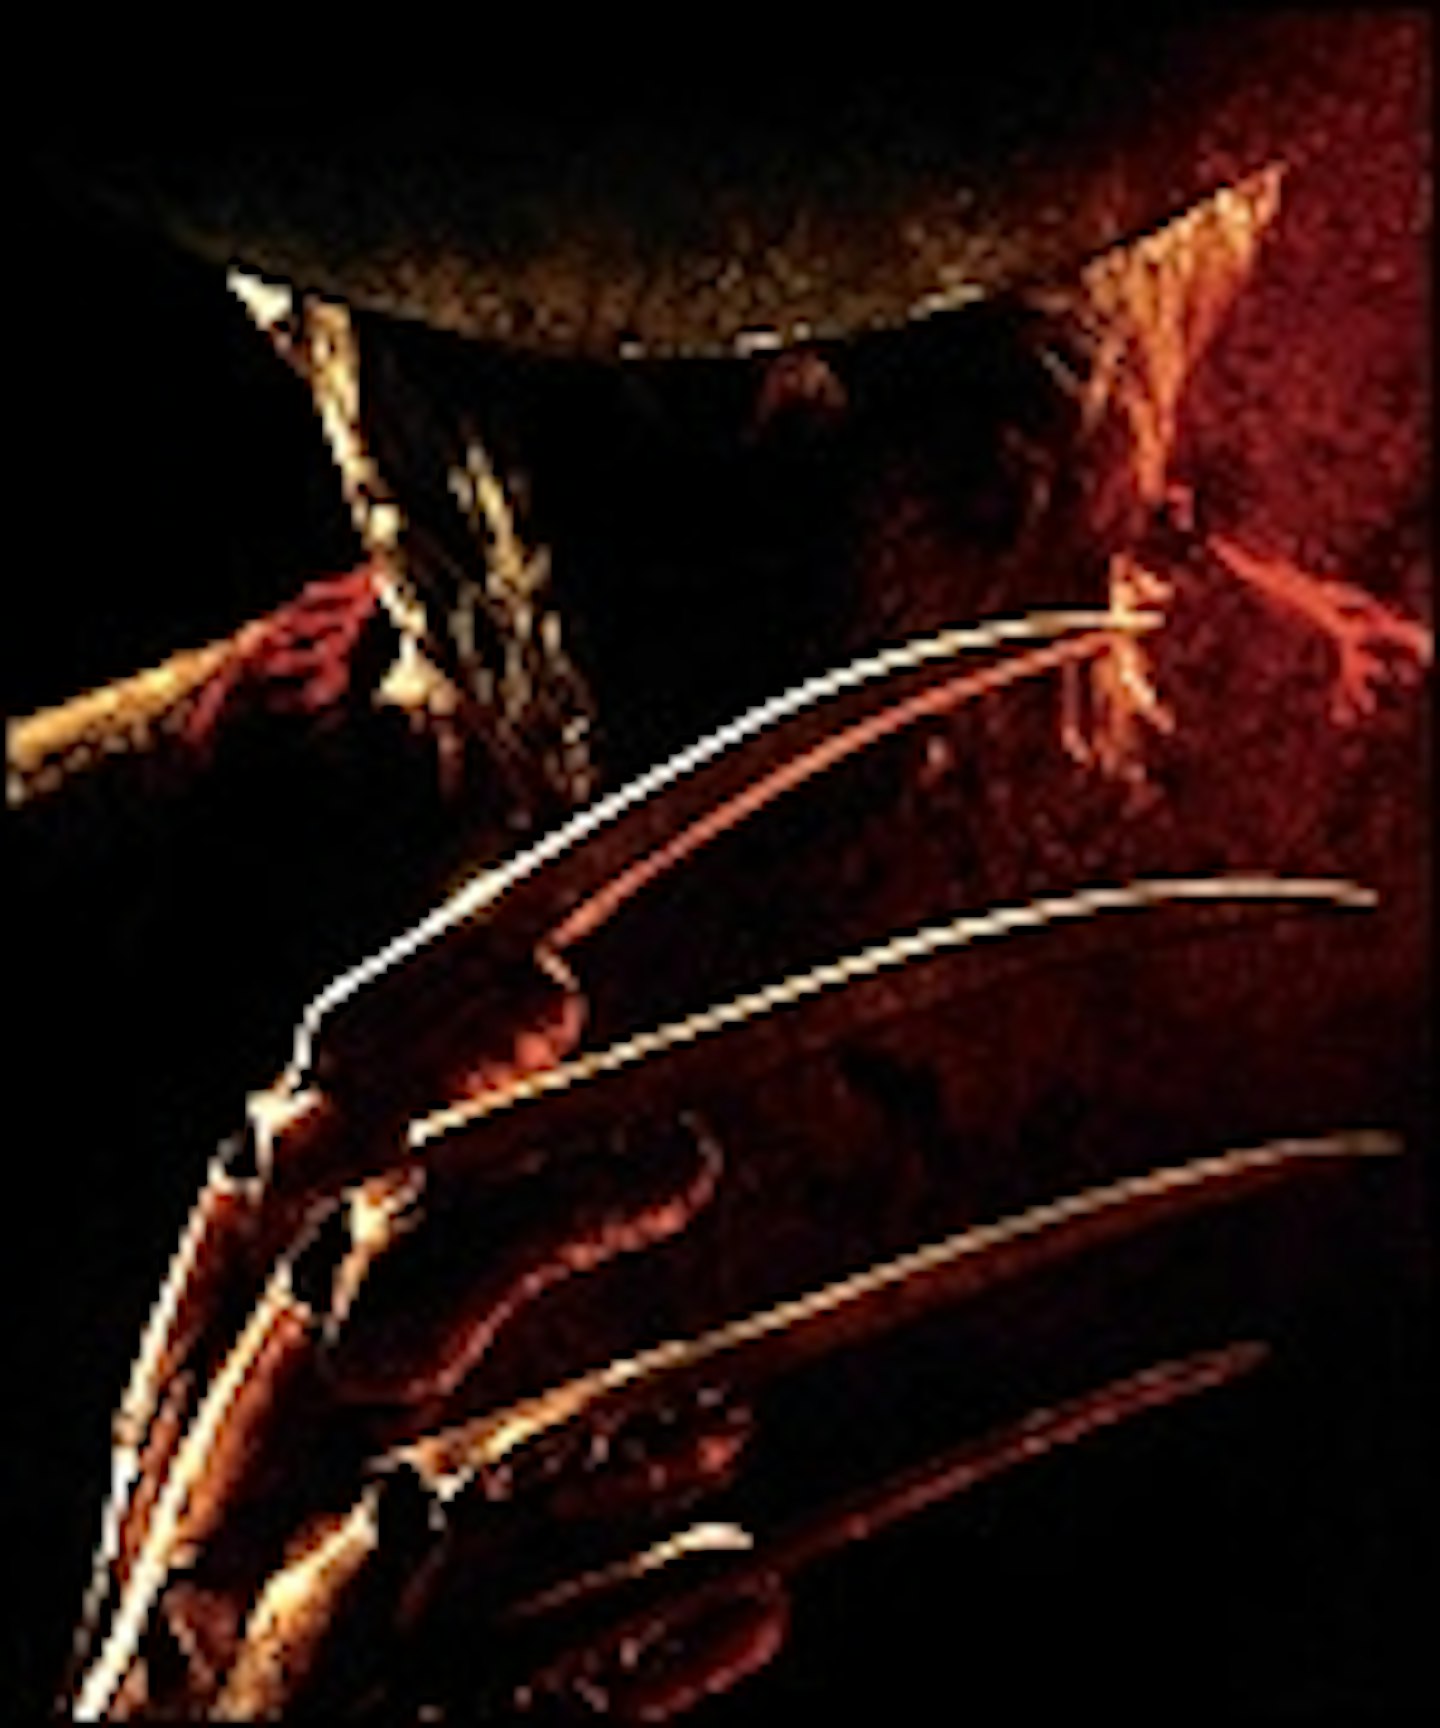 Elm Street Teaser Trailer Released